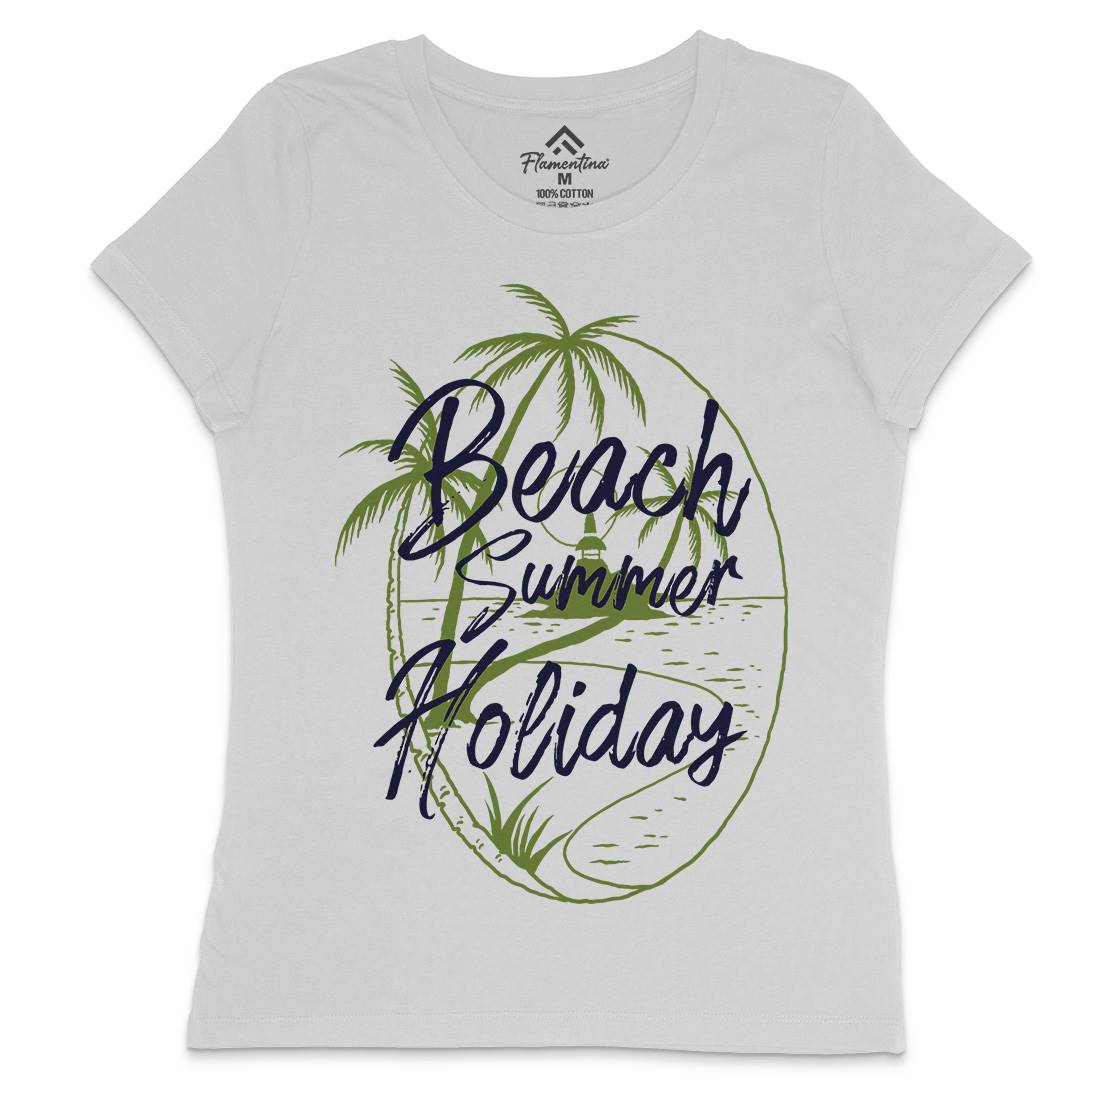 Beach Island Womens Crew Neck T-Shirt Nature C709